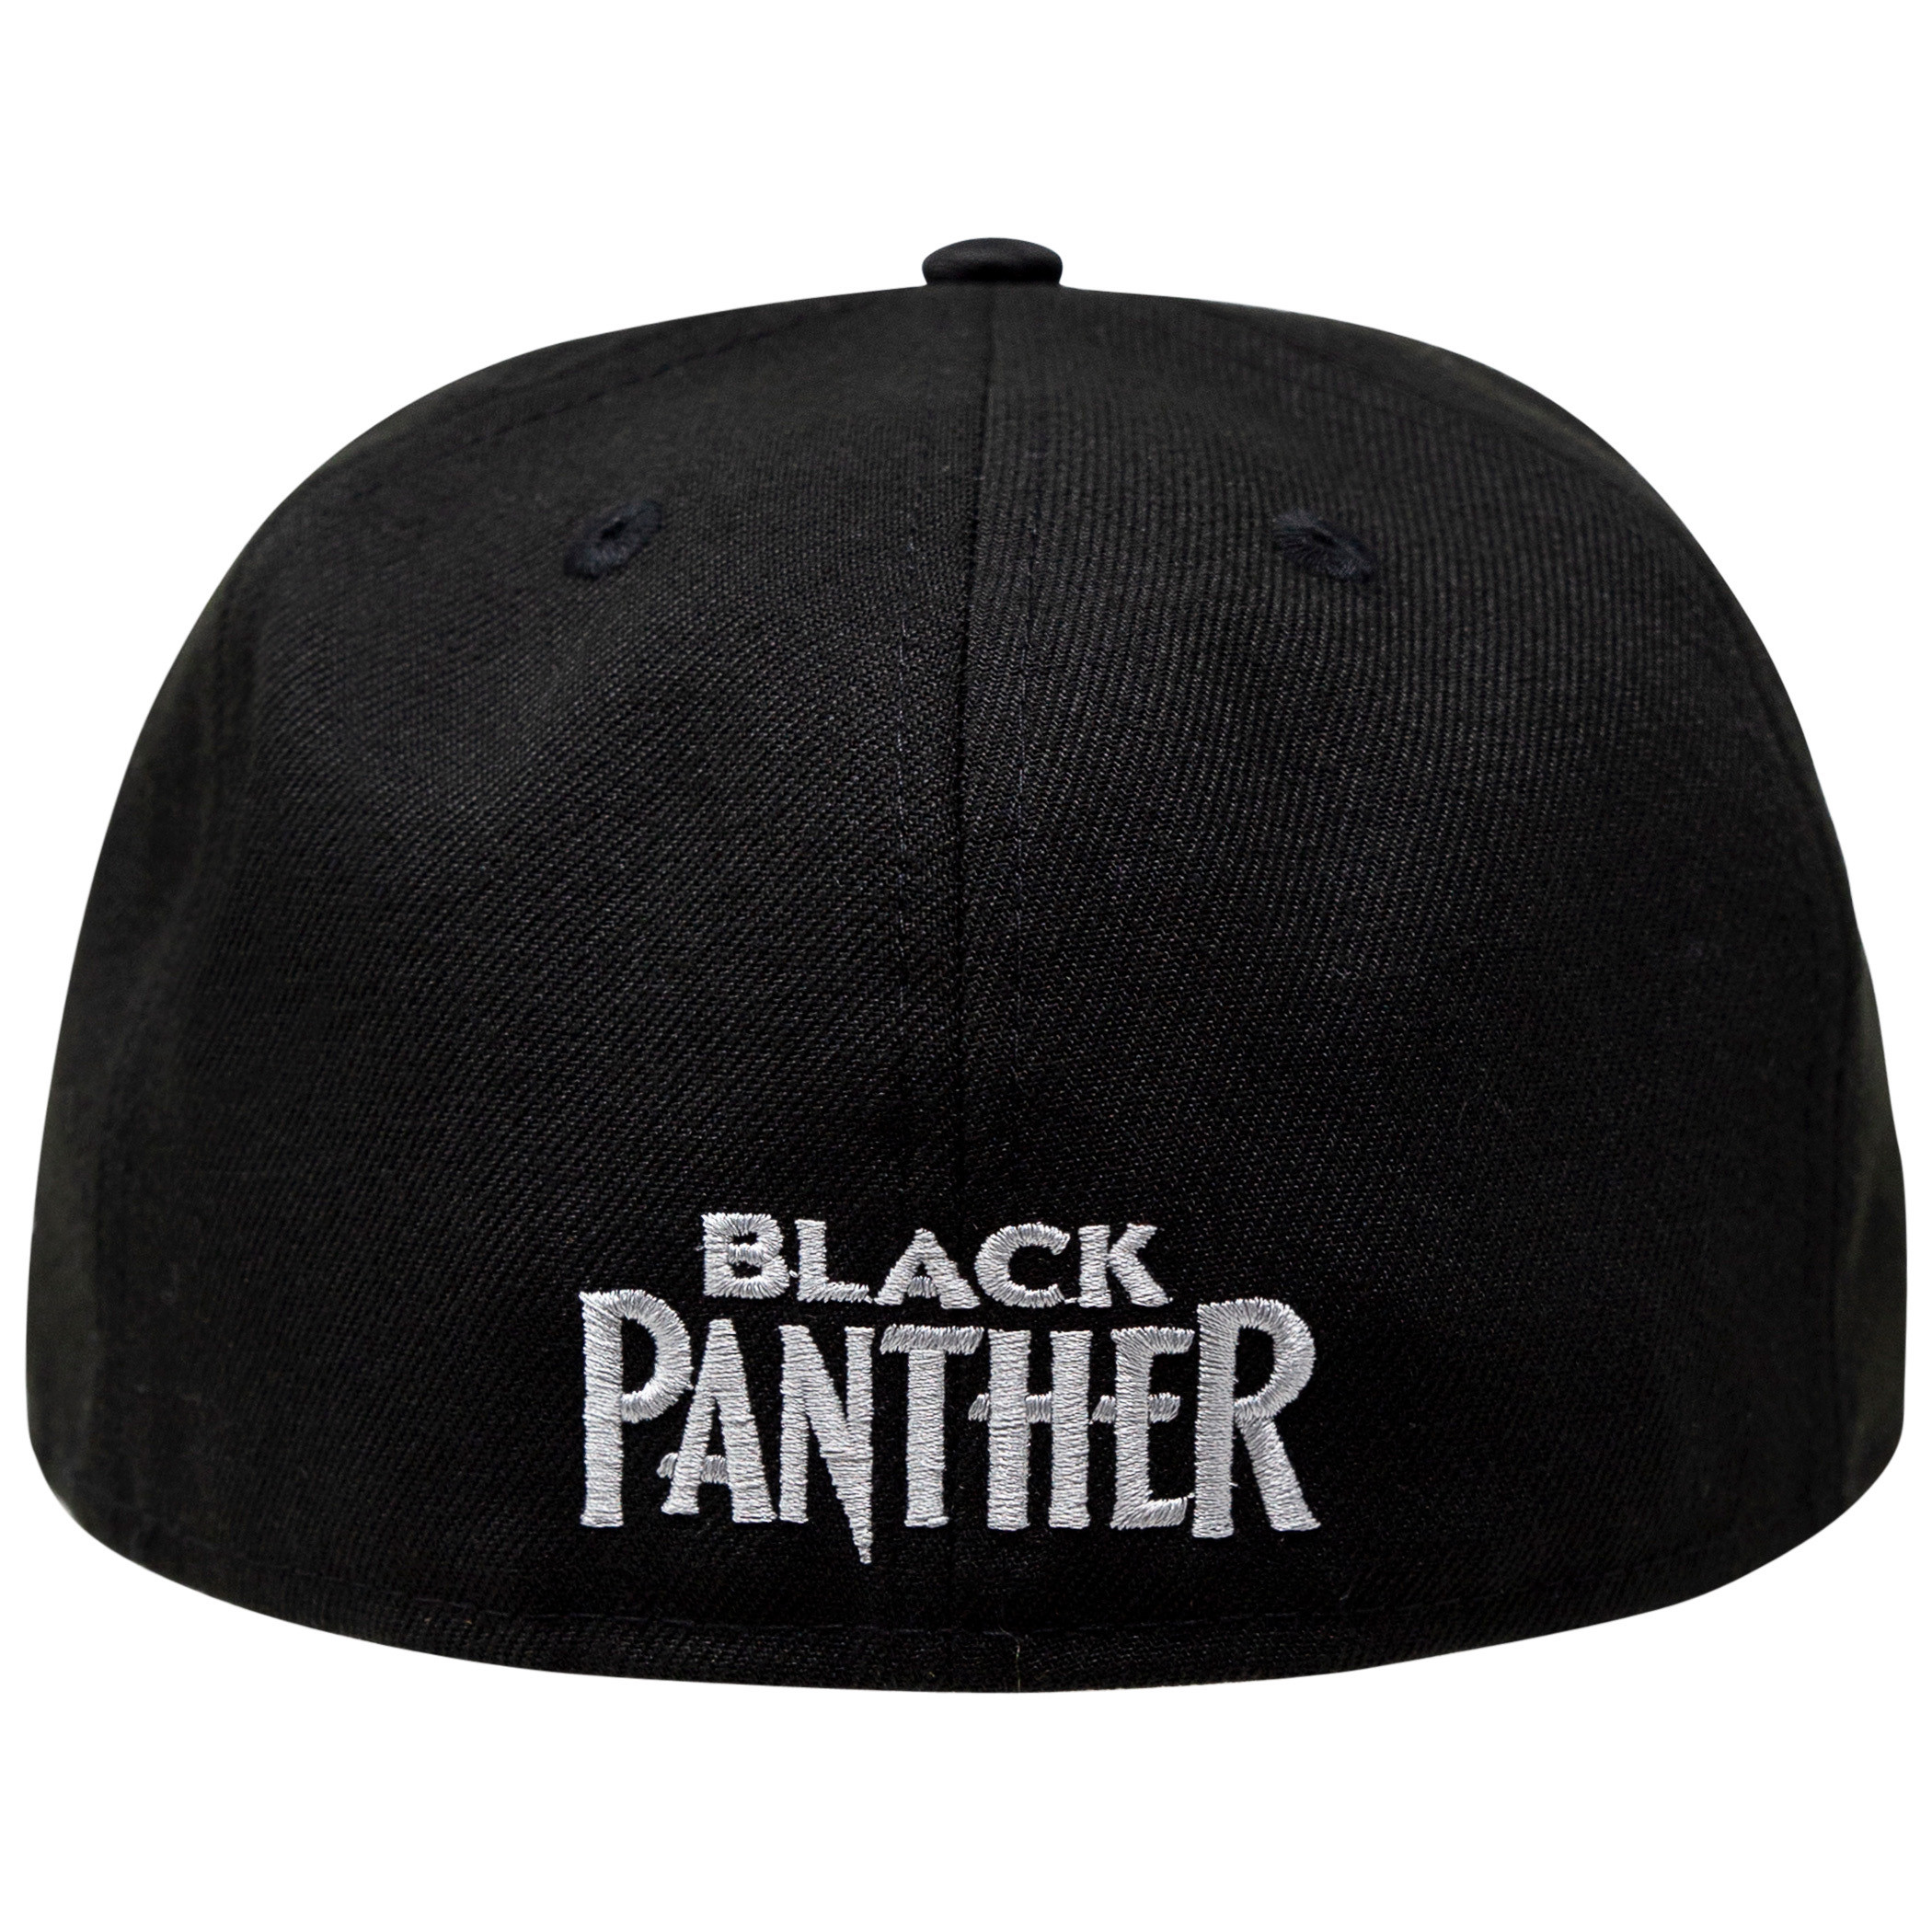 Black Panther – New Era Cap